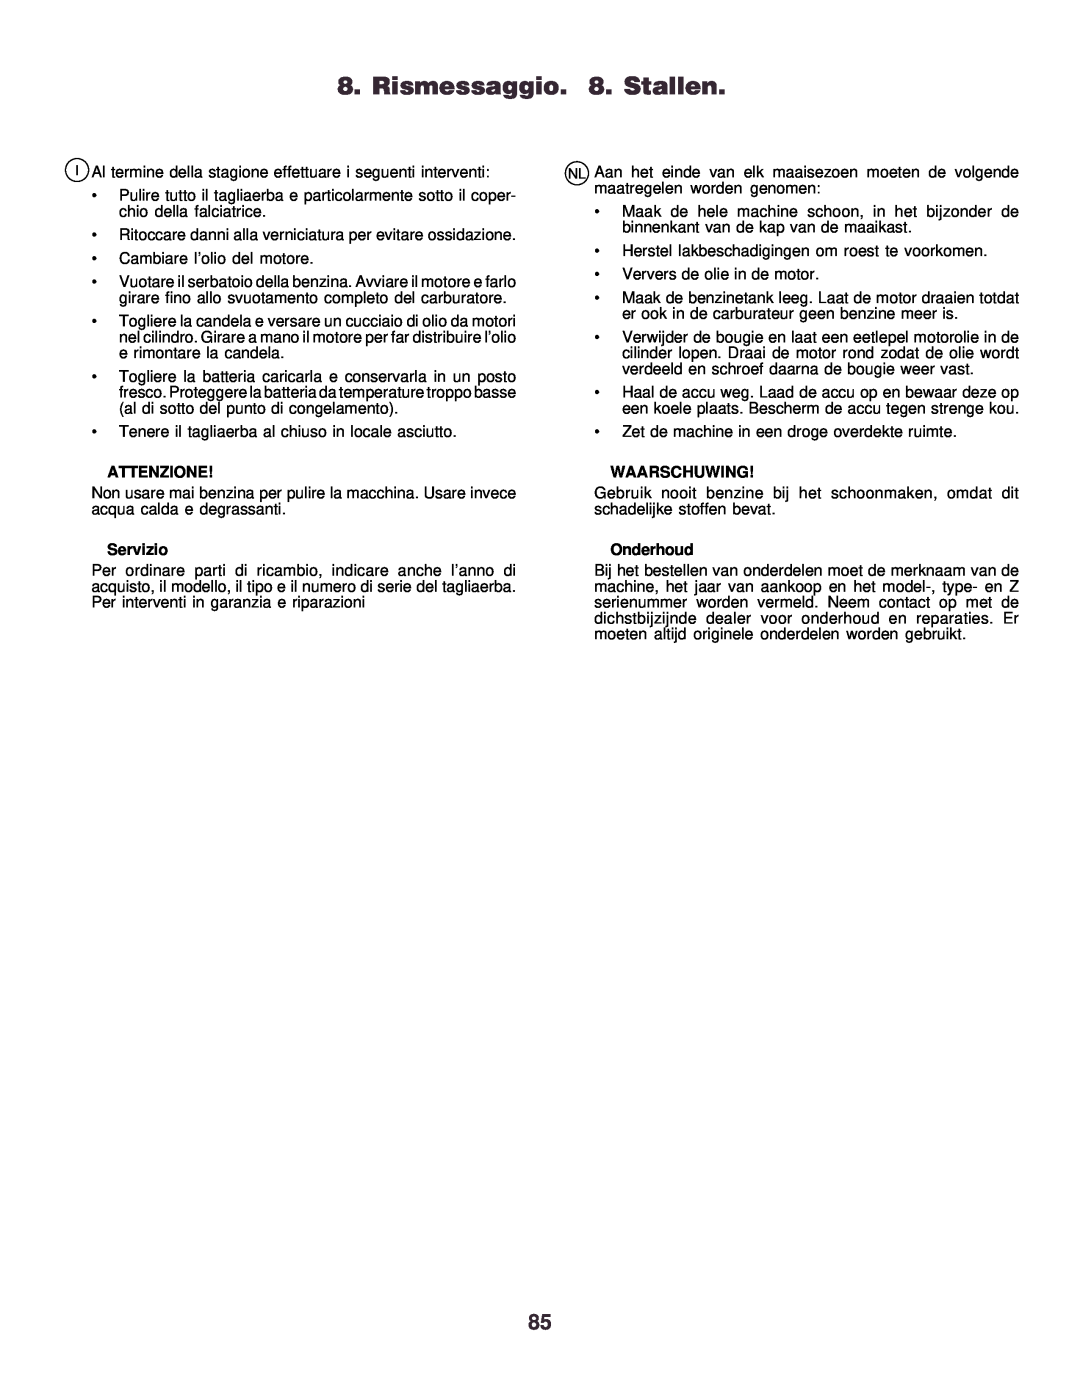 Husqvarna CTH130 instruction manual Rismessaggio. 8. Stallen, Attenzione, Servizio, Waarschuwing, Onderhoud 